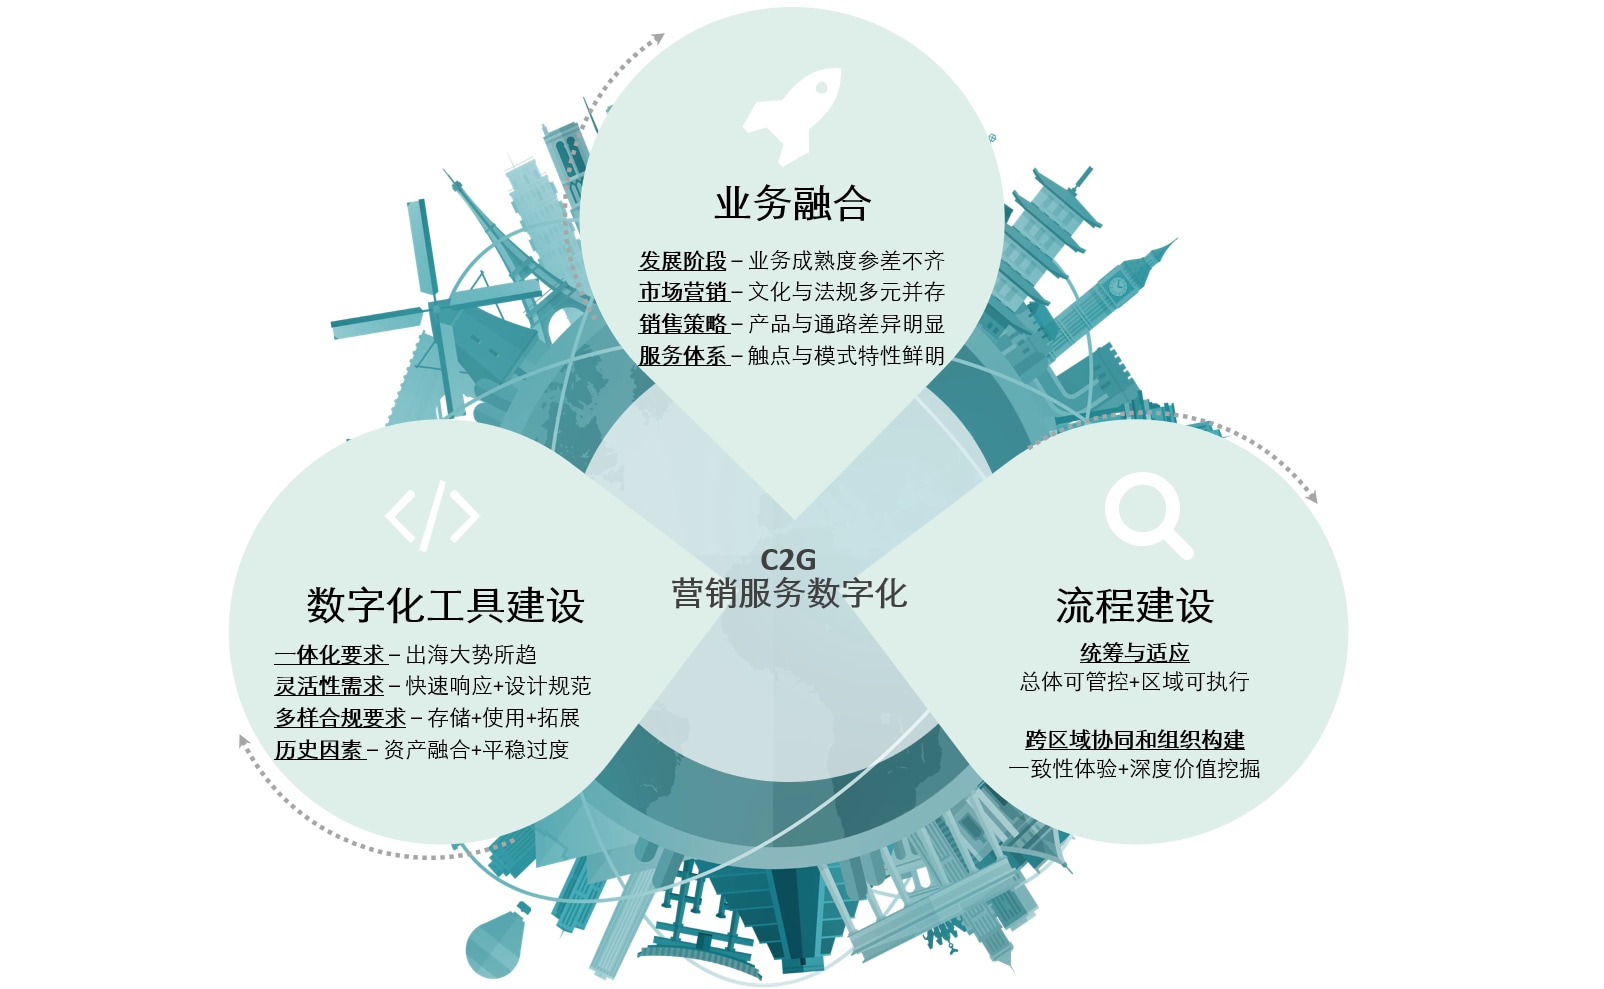 中国企业全球化新纪元系列白皮书之数字化能力篇| 德勤中国